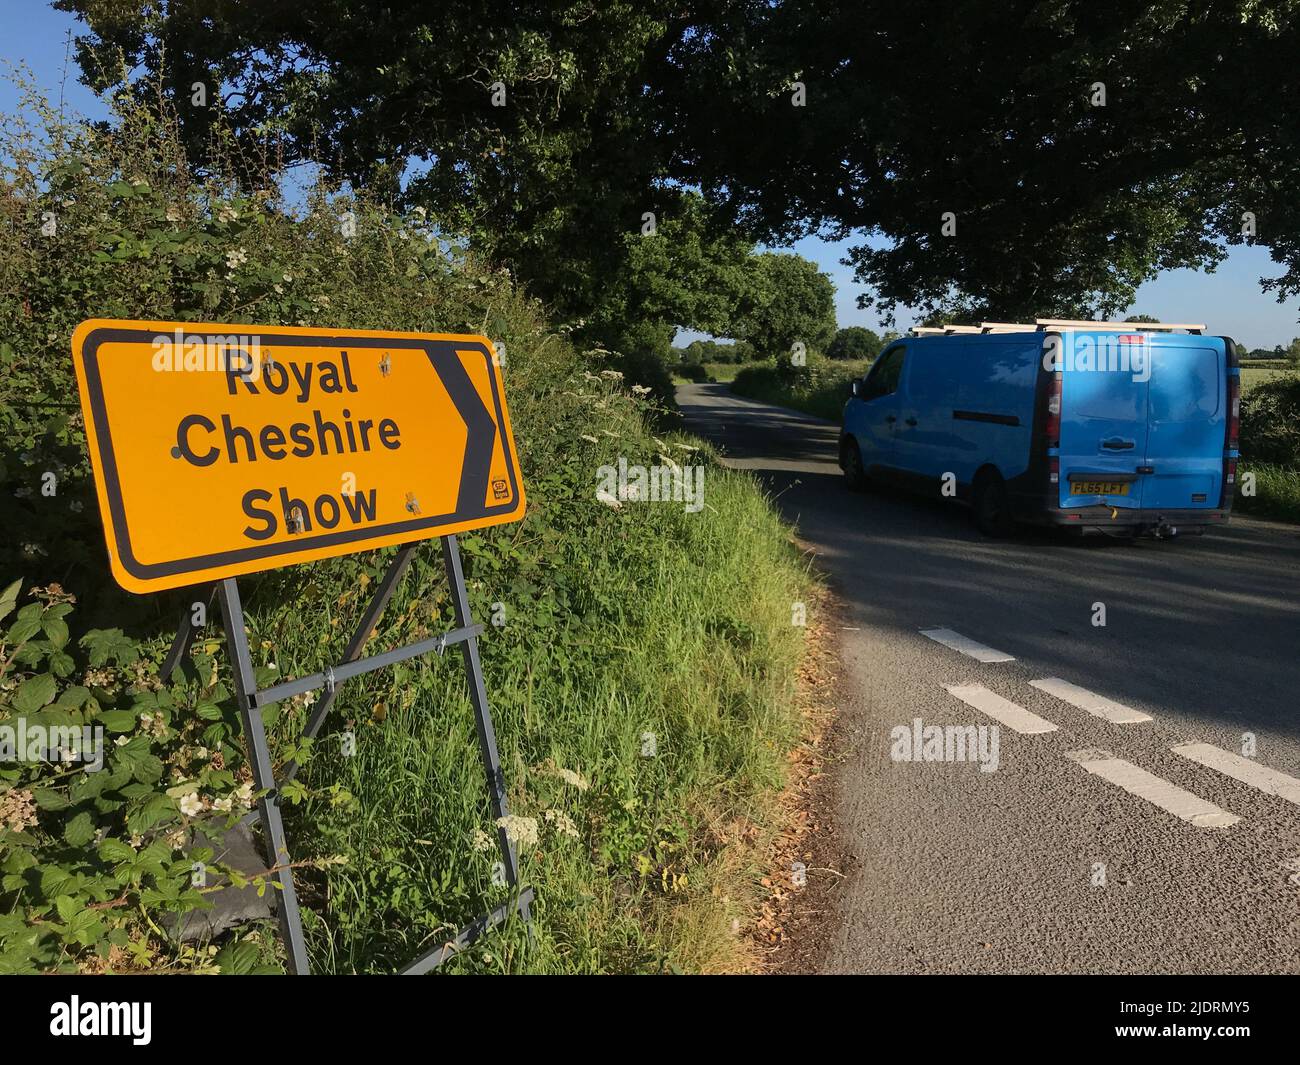 Royal Cheshire Show, gelbe Verkehrskontrollschilder in ländlichen Fahrspuren, um Staus und Verspätungen zu vermeiden, Pickmere, Cheshire, England, Großbritannien Stockfoto